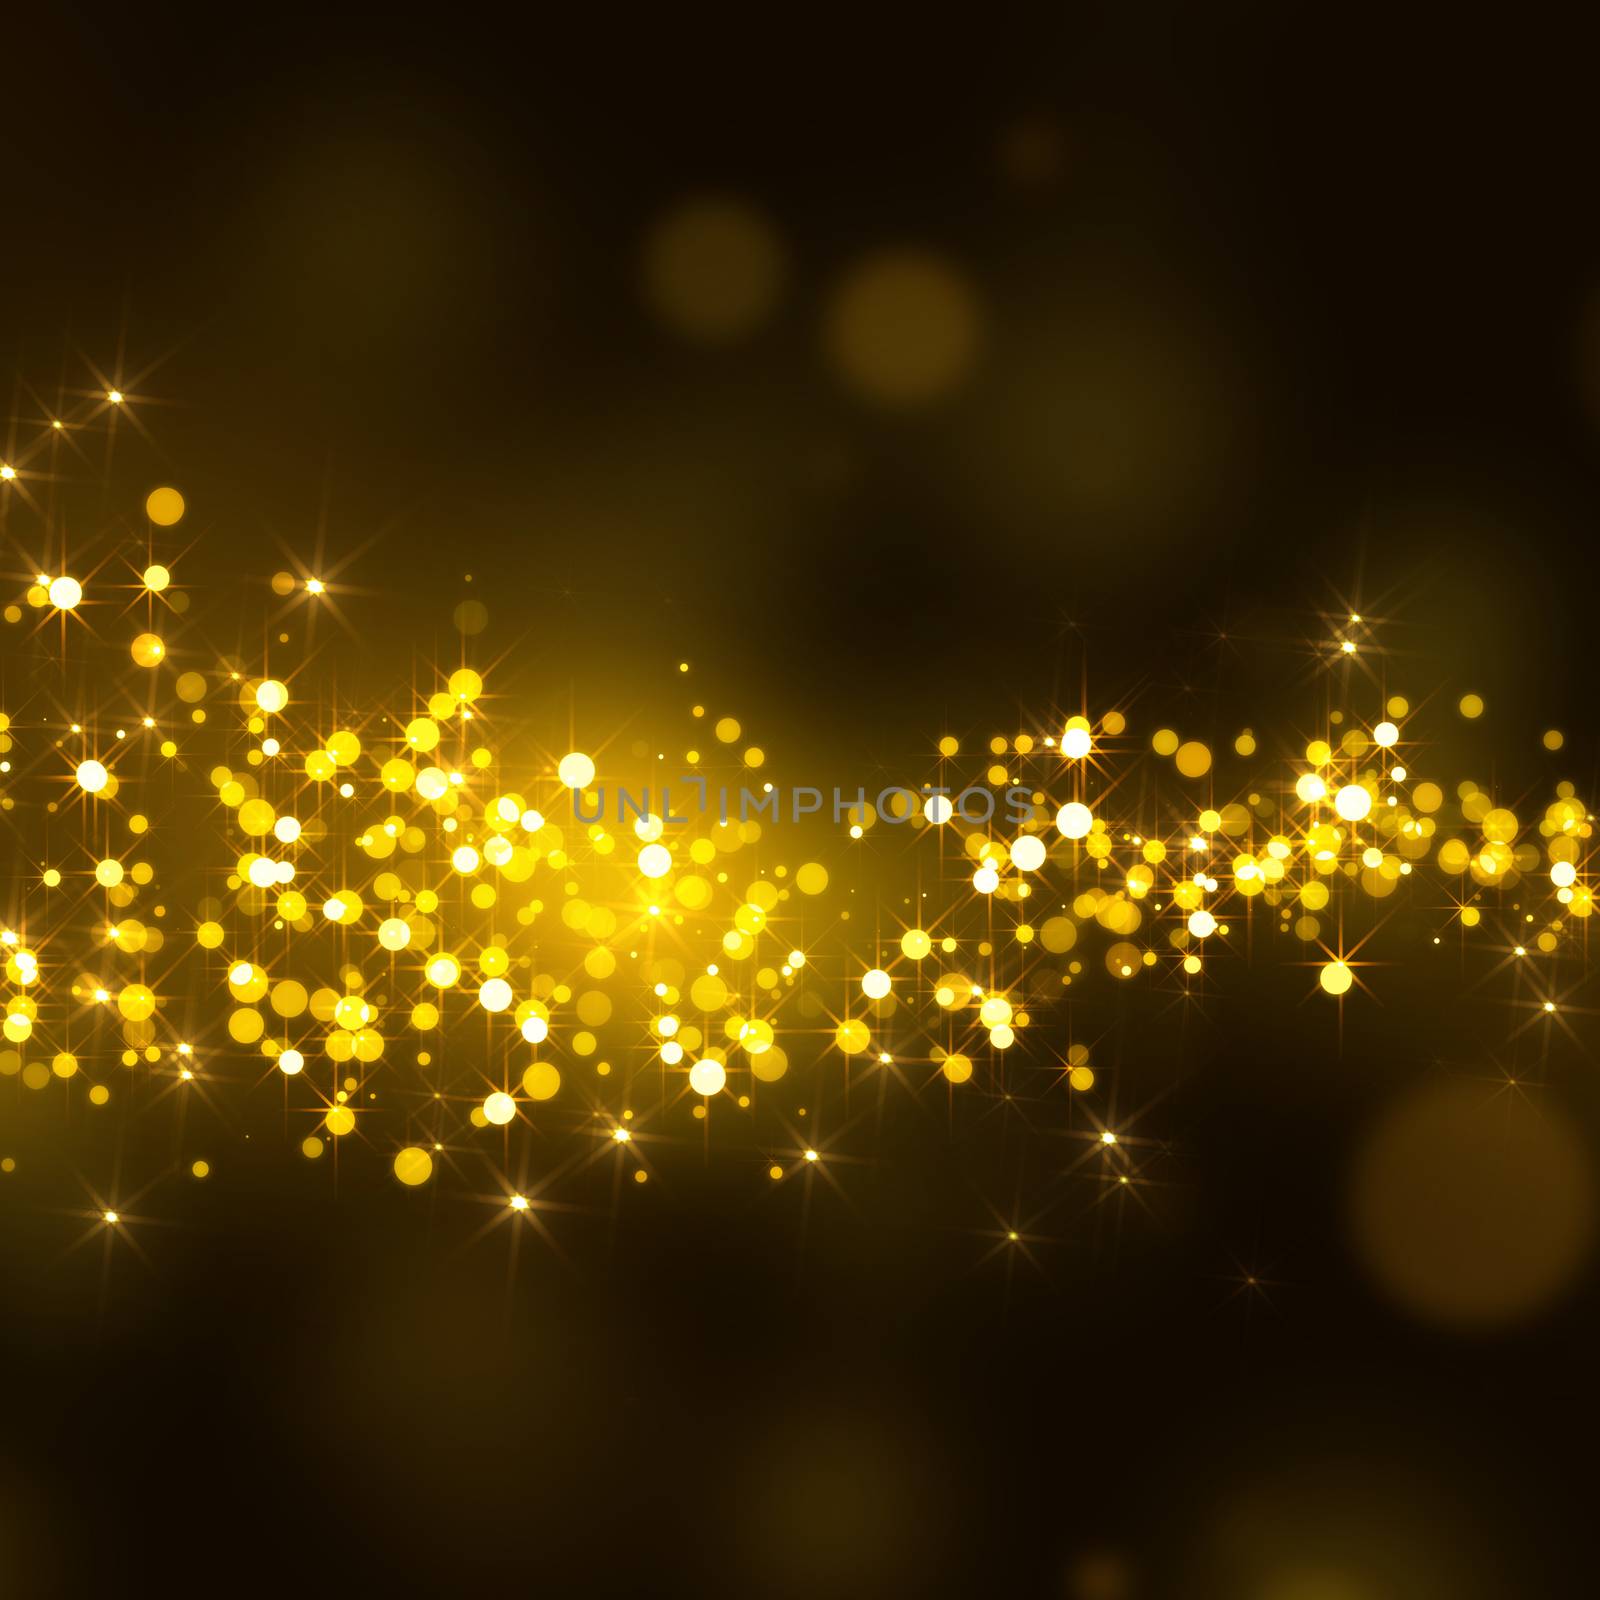 gold glittering stars tail dust